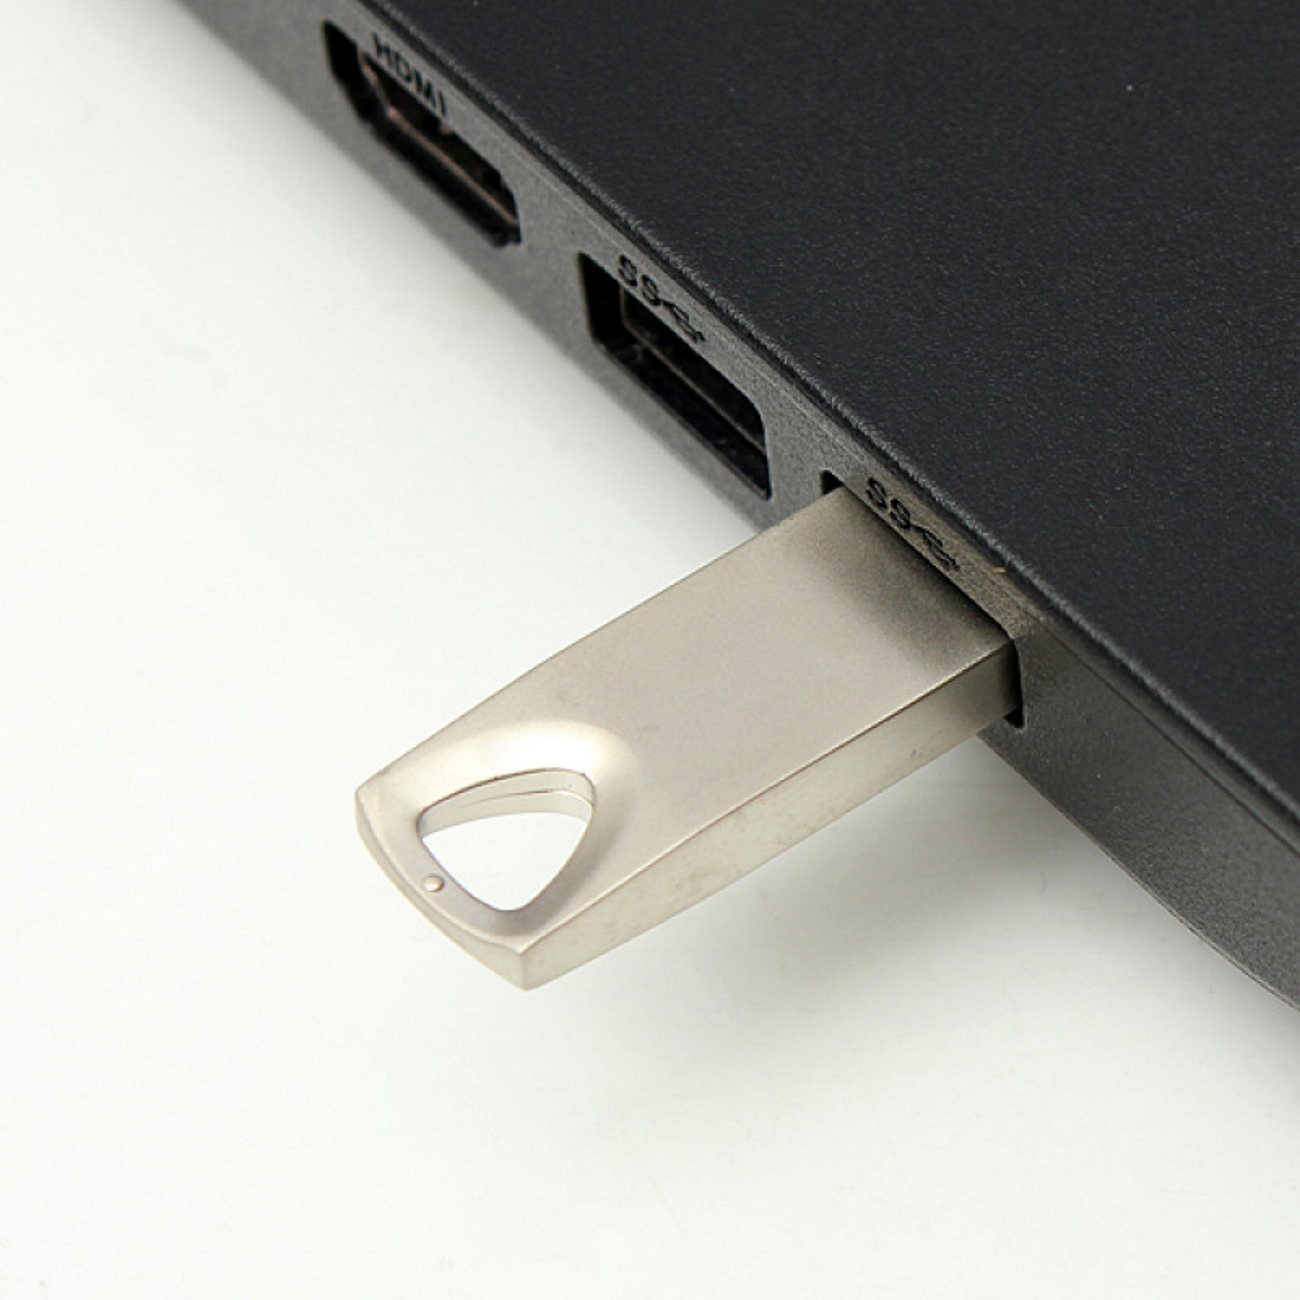 GB) ®Metall USB GERMANY SE13 128 (Silber, USB-Stick